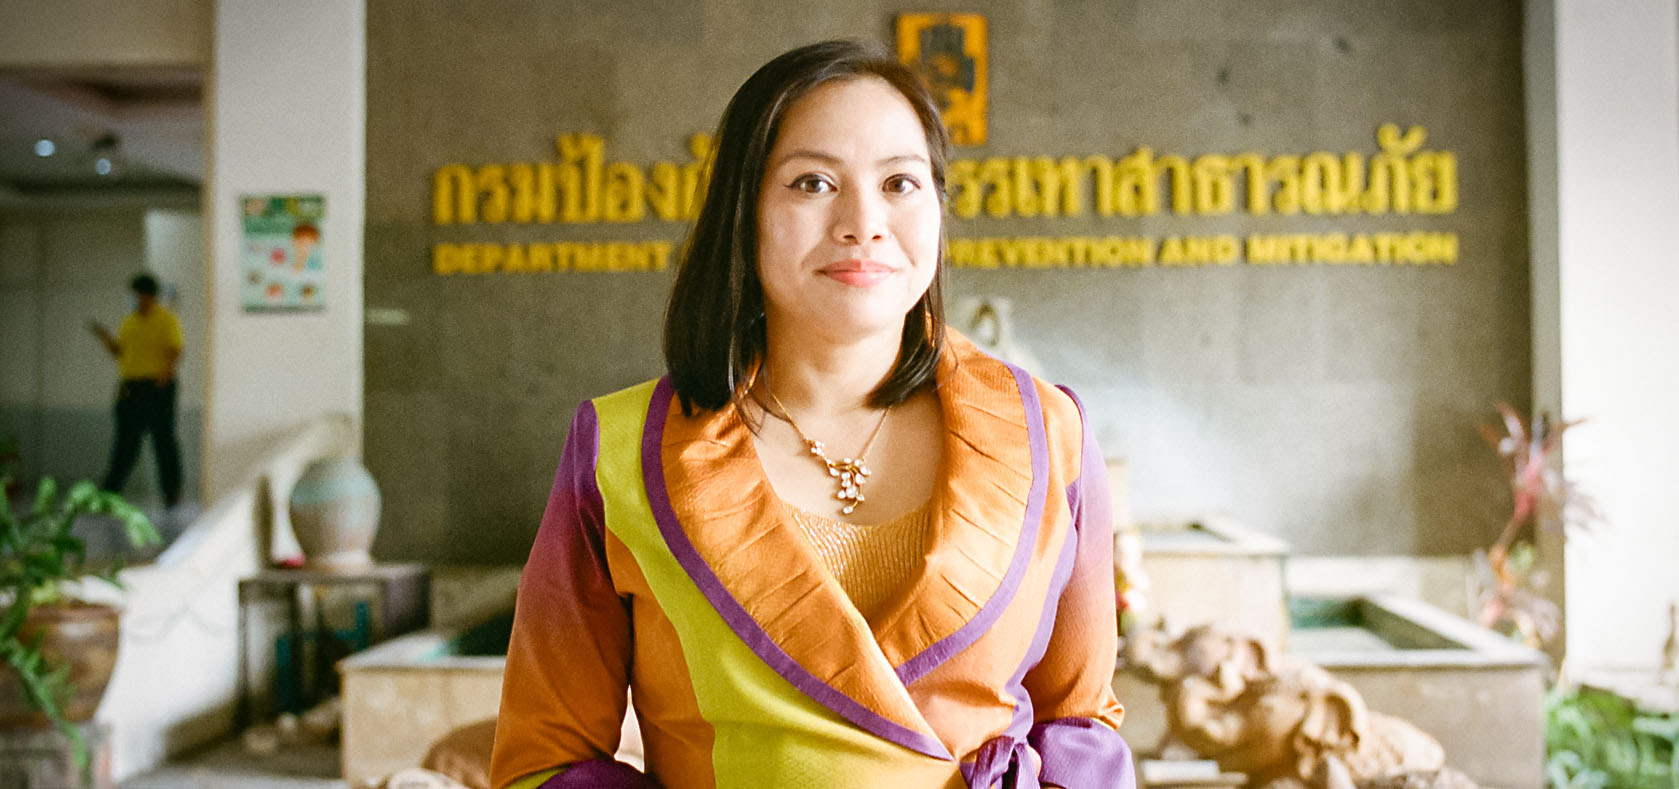 Aimée Na Nan est directrice de la Section de la coopération internationale au Département de la prévention et de l’atténuation des catastrophes (DDPM) du ministère de l’Intérieur thaïlandais. Photo : ONU Femmes